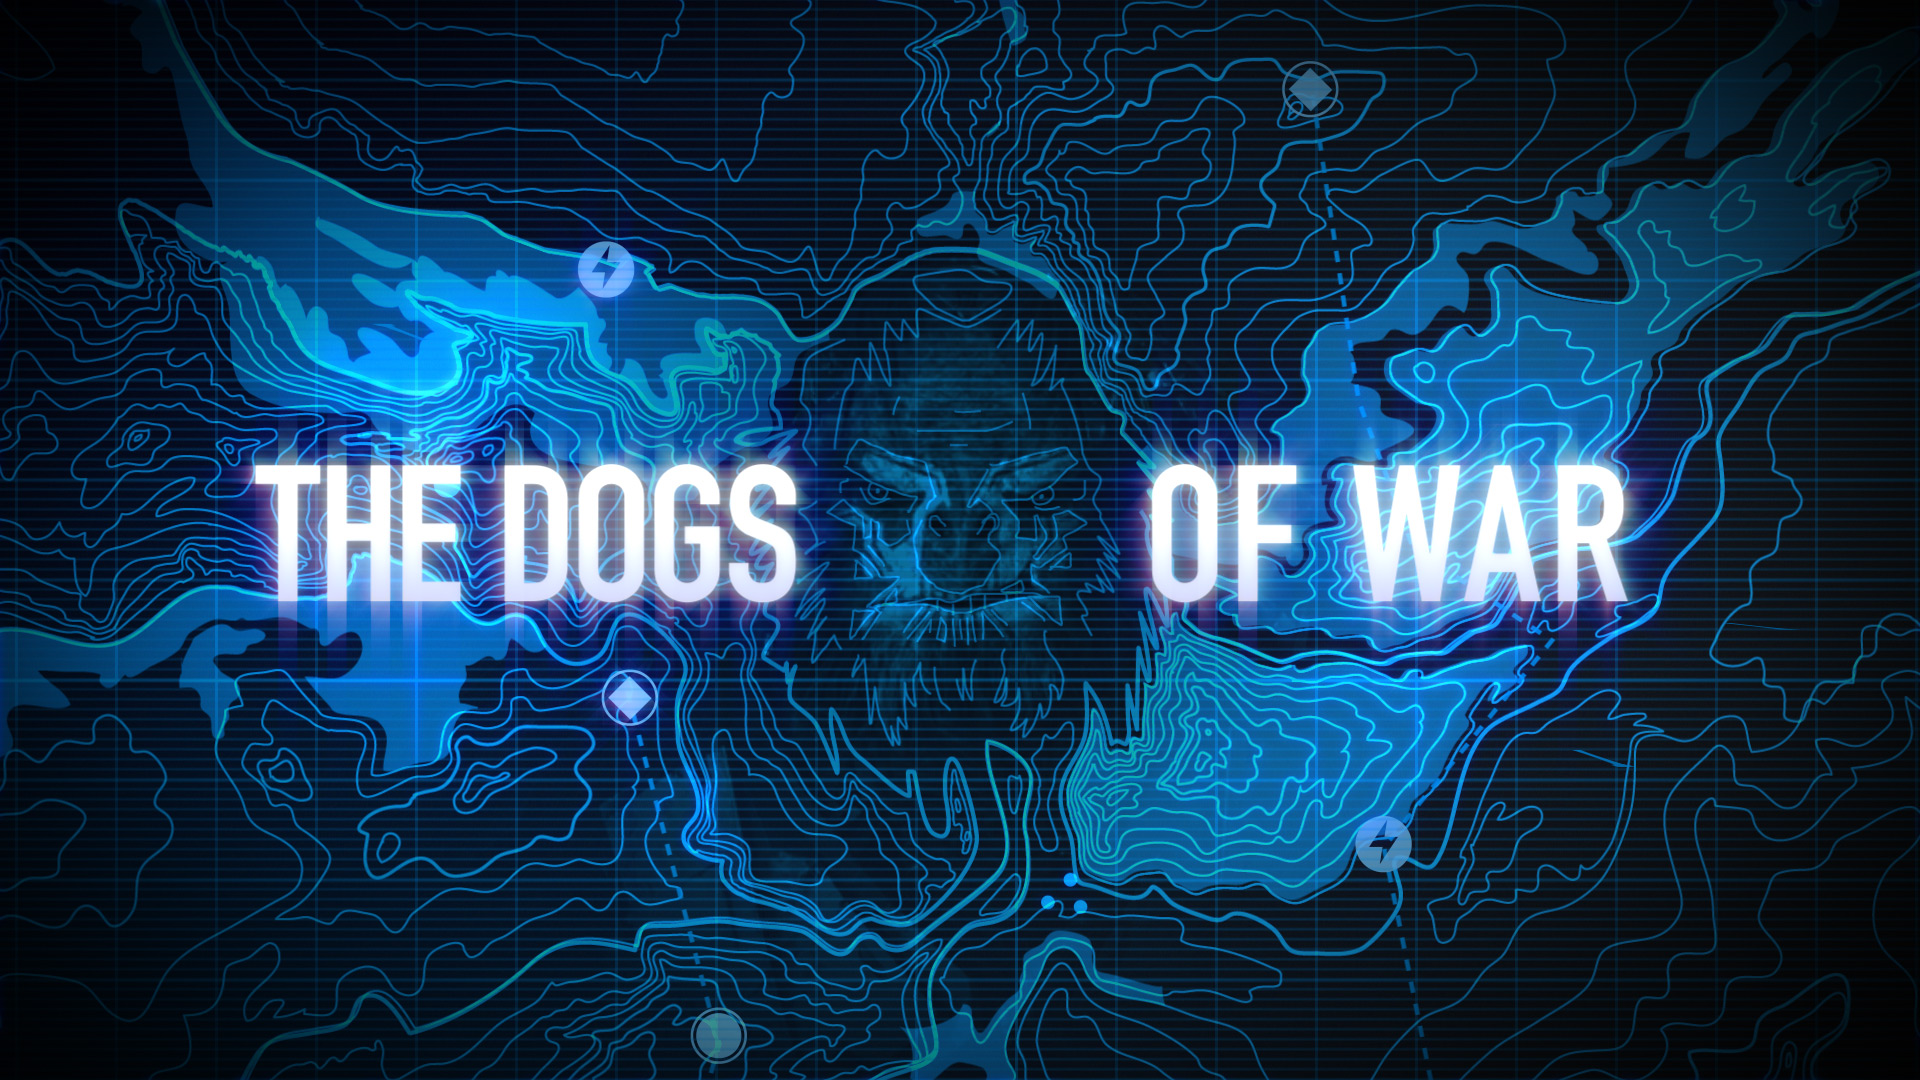 The Dogs of War » Forward Unto Dawn